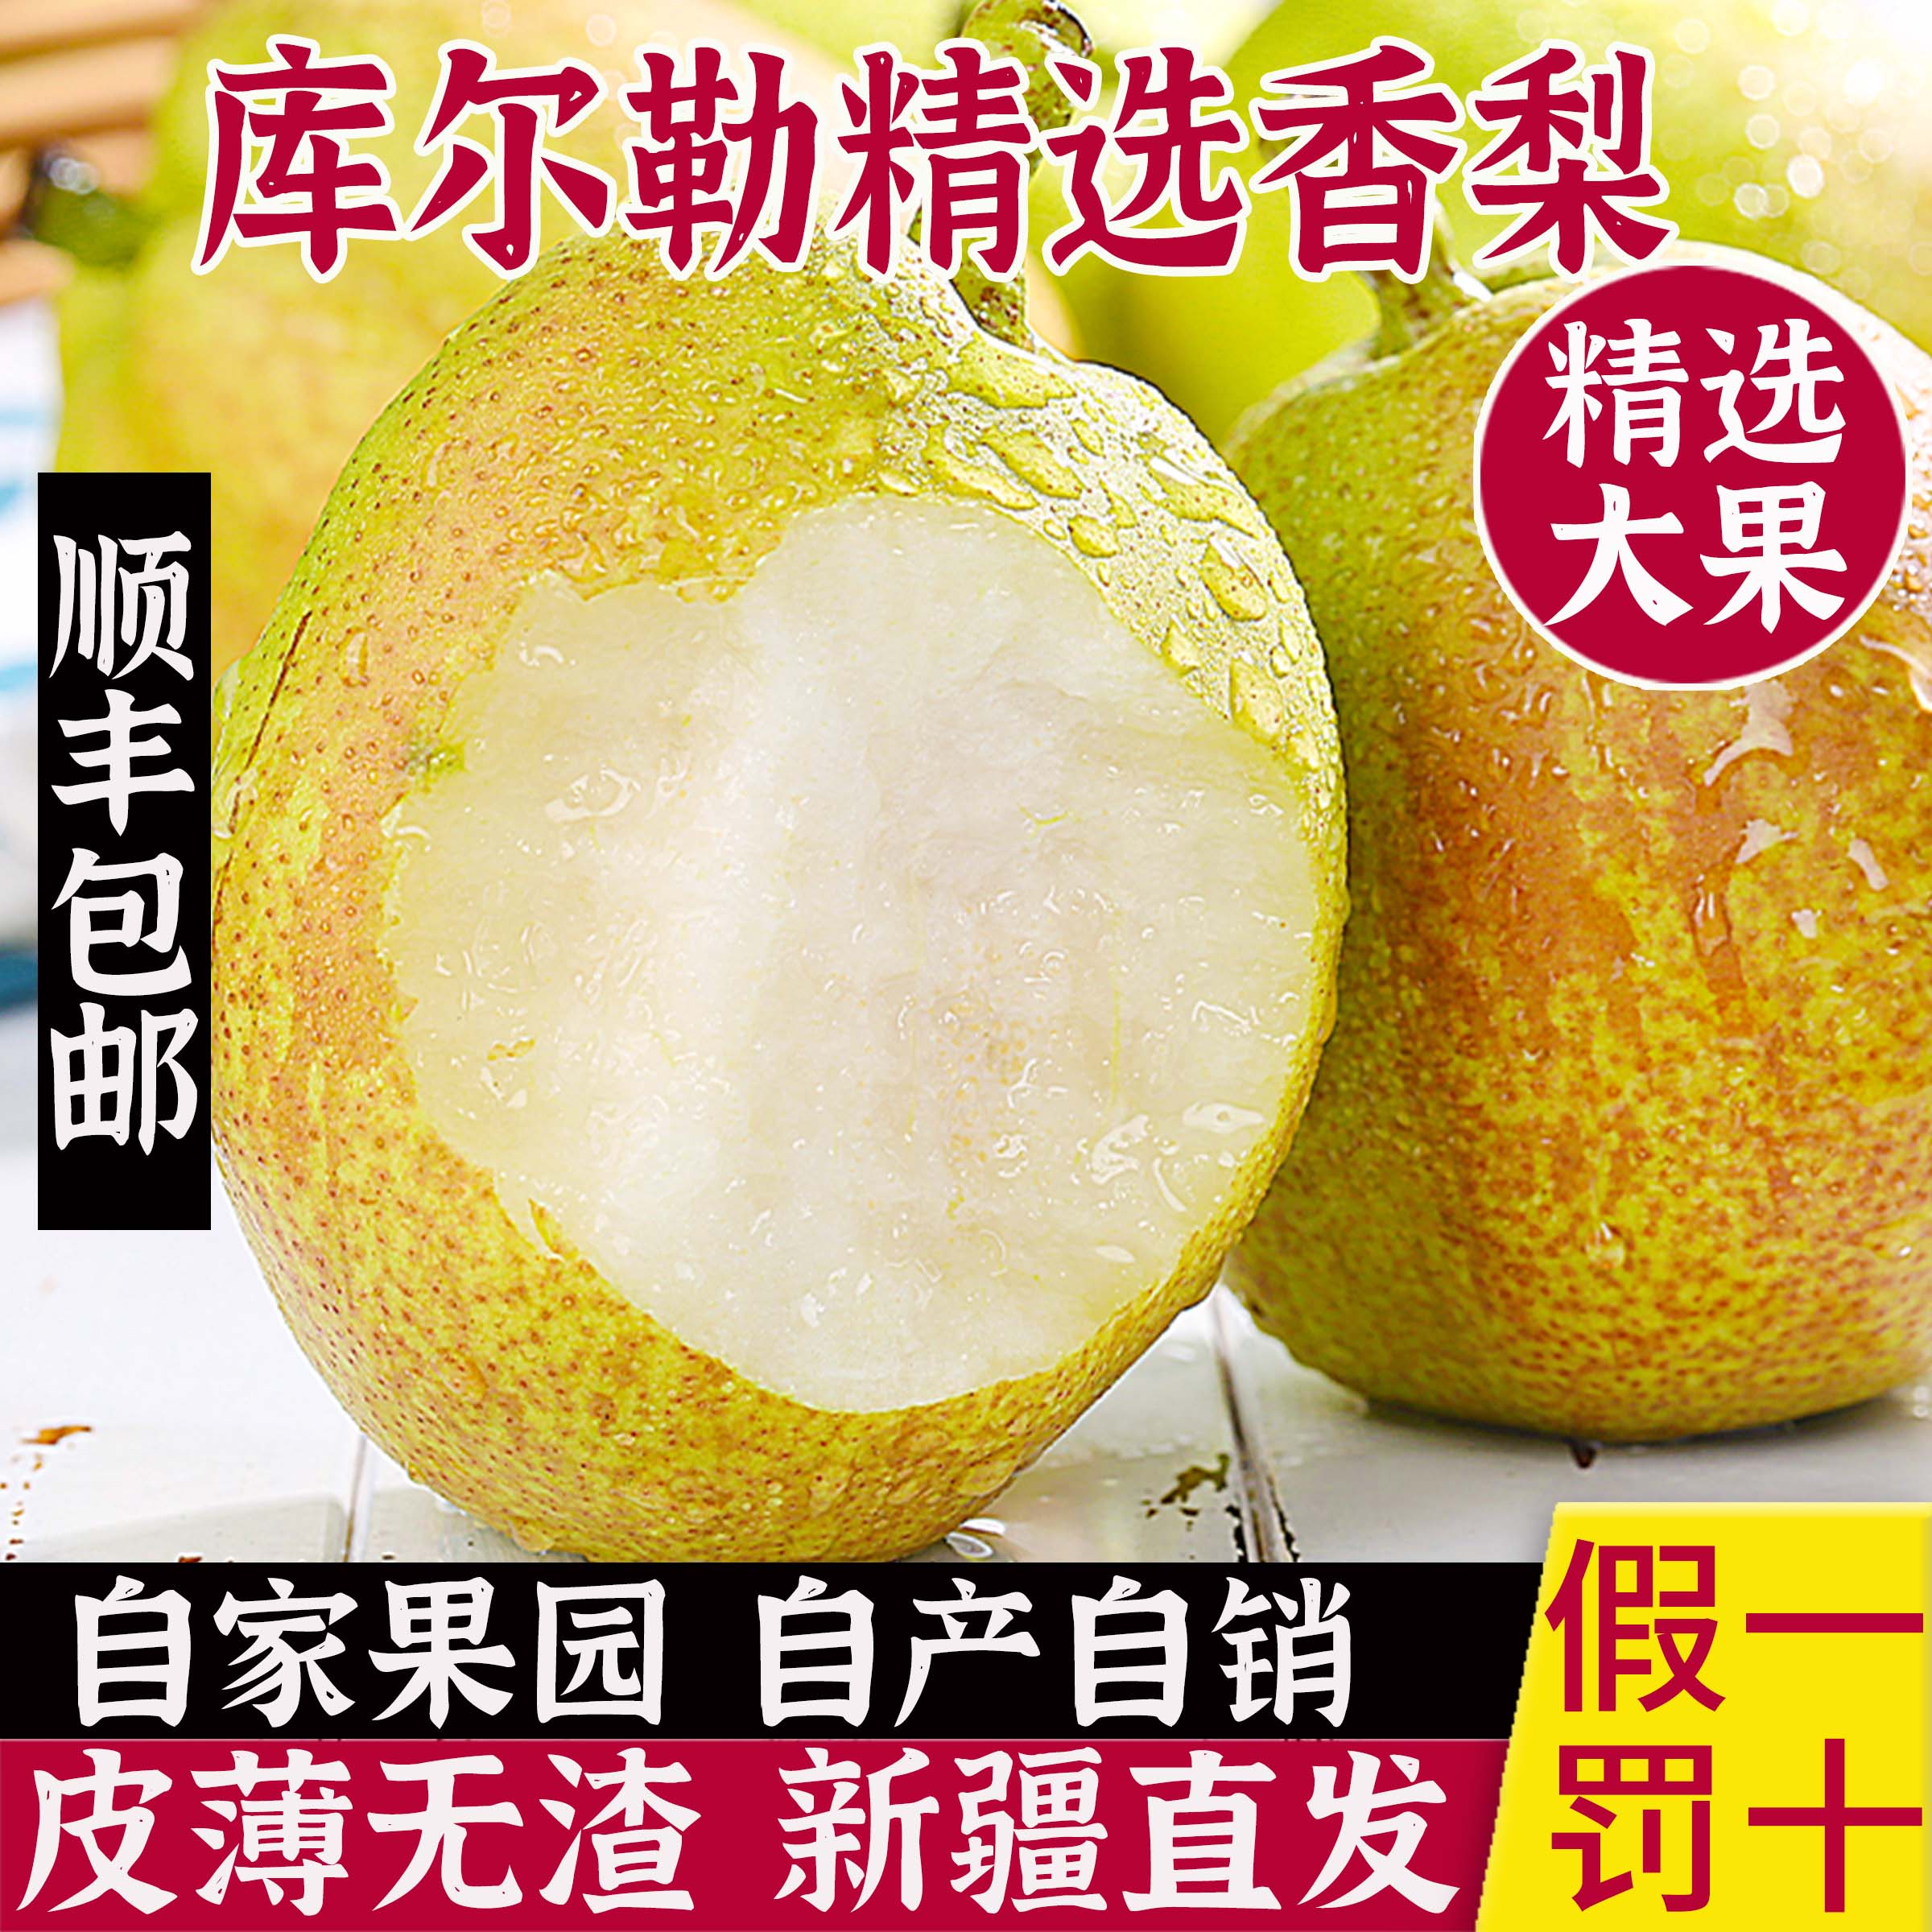 新疆库尔勒香梨全母梨子特级水果新鲜整箱10斤当季水果